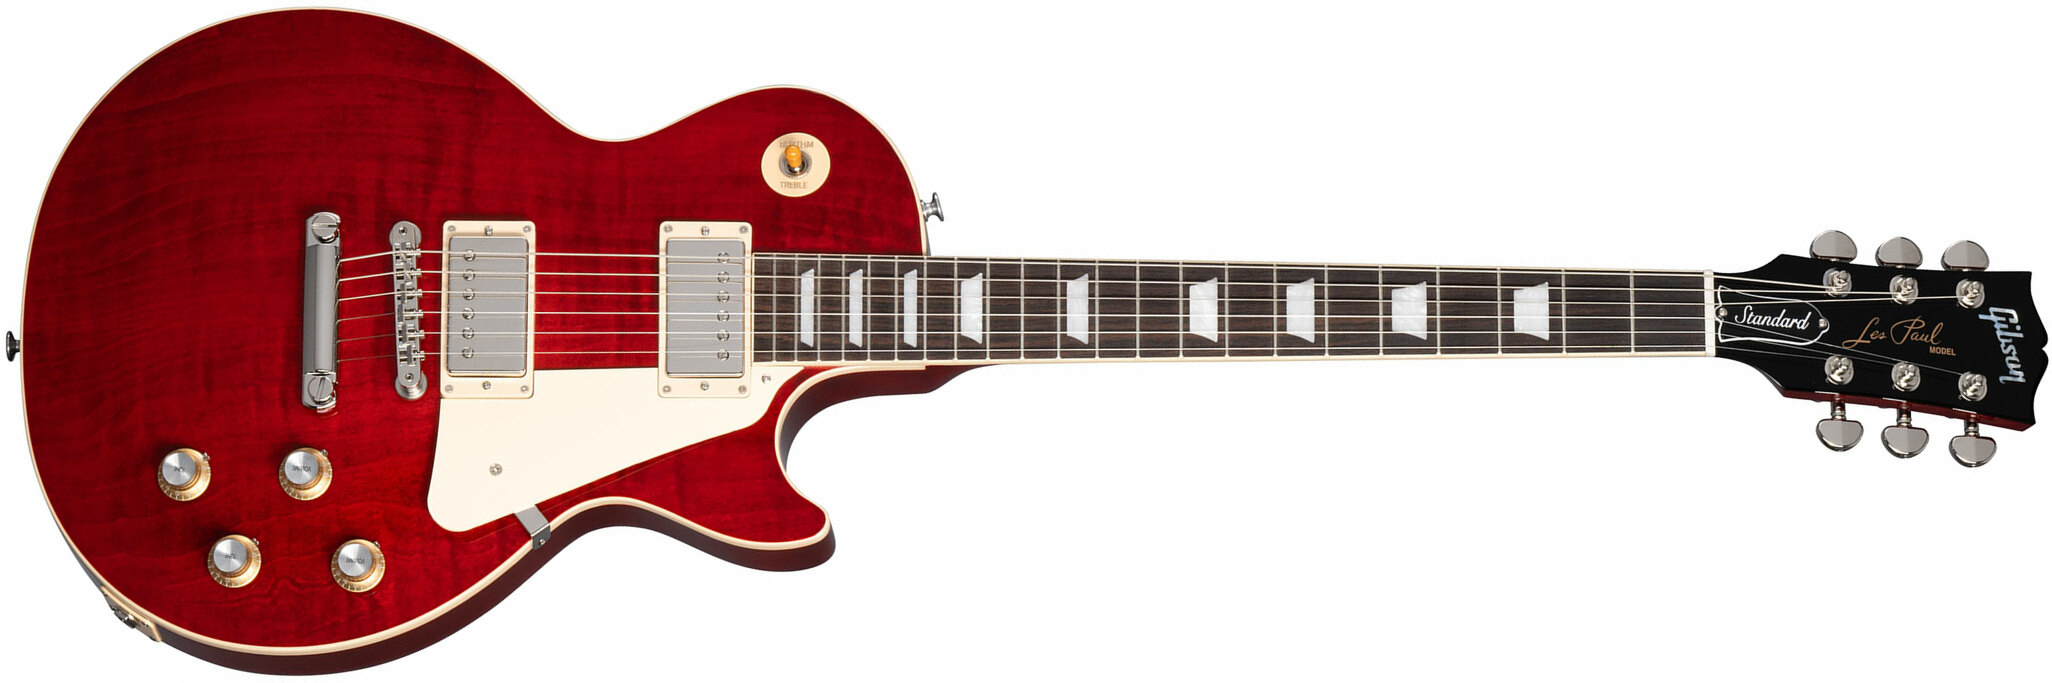 Gibson Les Paul Standard 60s Figured Original 2h Ht Rw - 60s Cherry - Enkel gesneden elektrische gitaar - Main picture